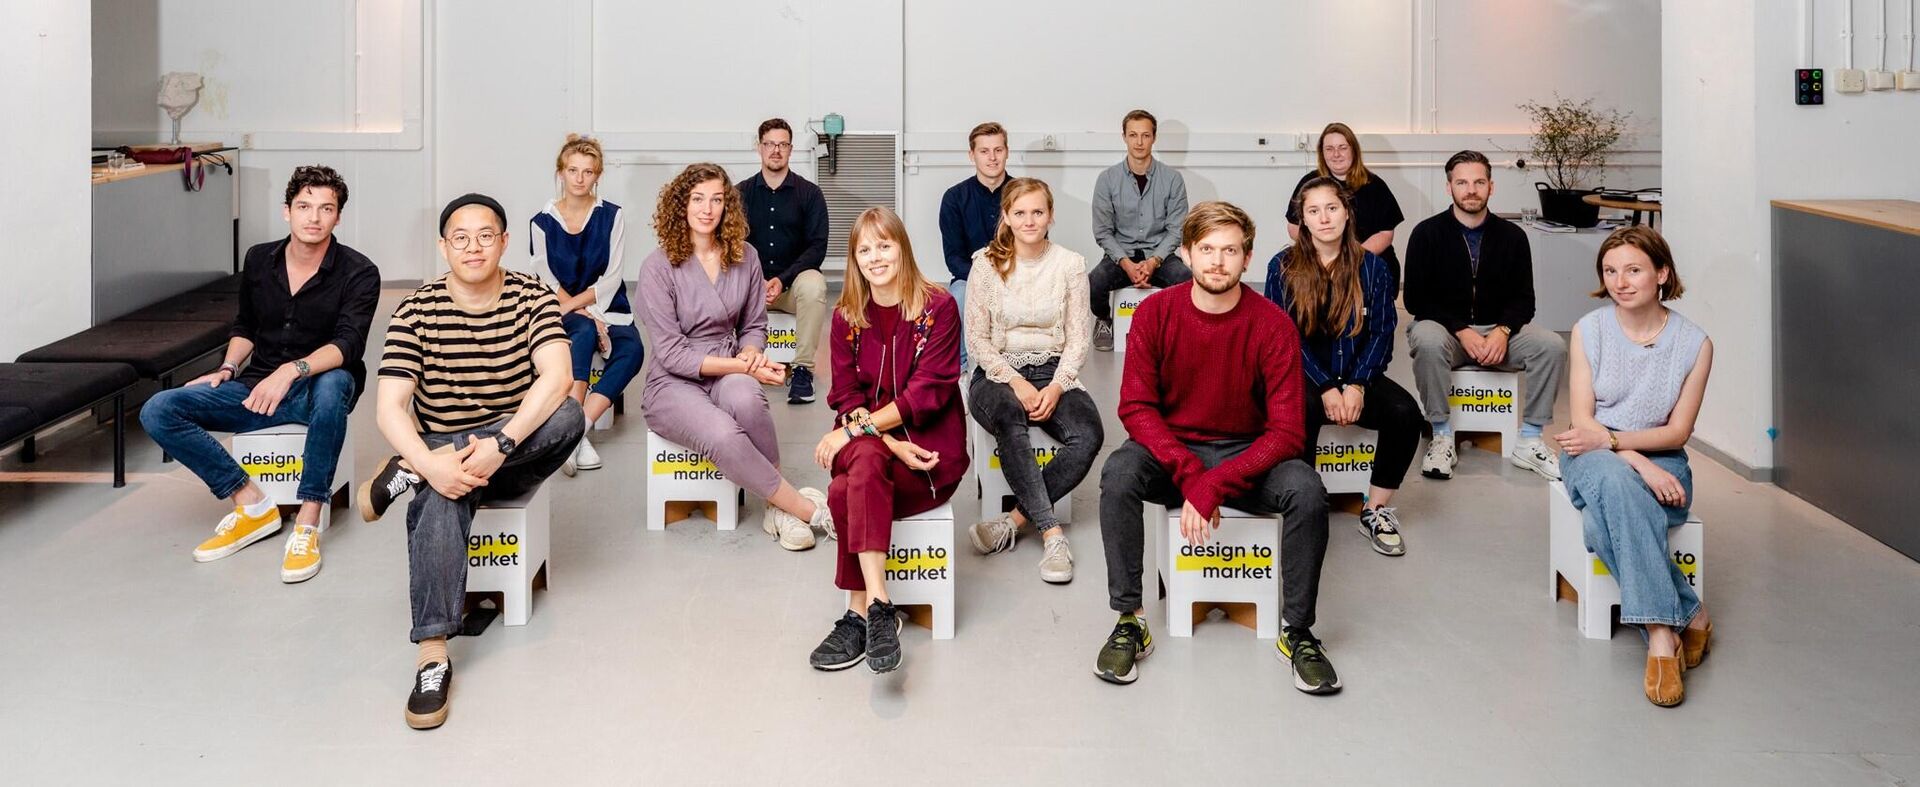 11 designers van start bij TalentHub Brabant